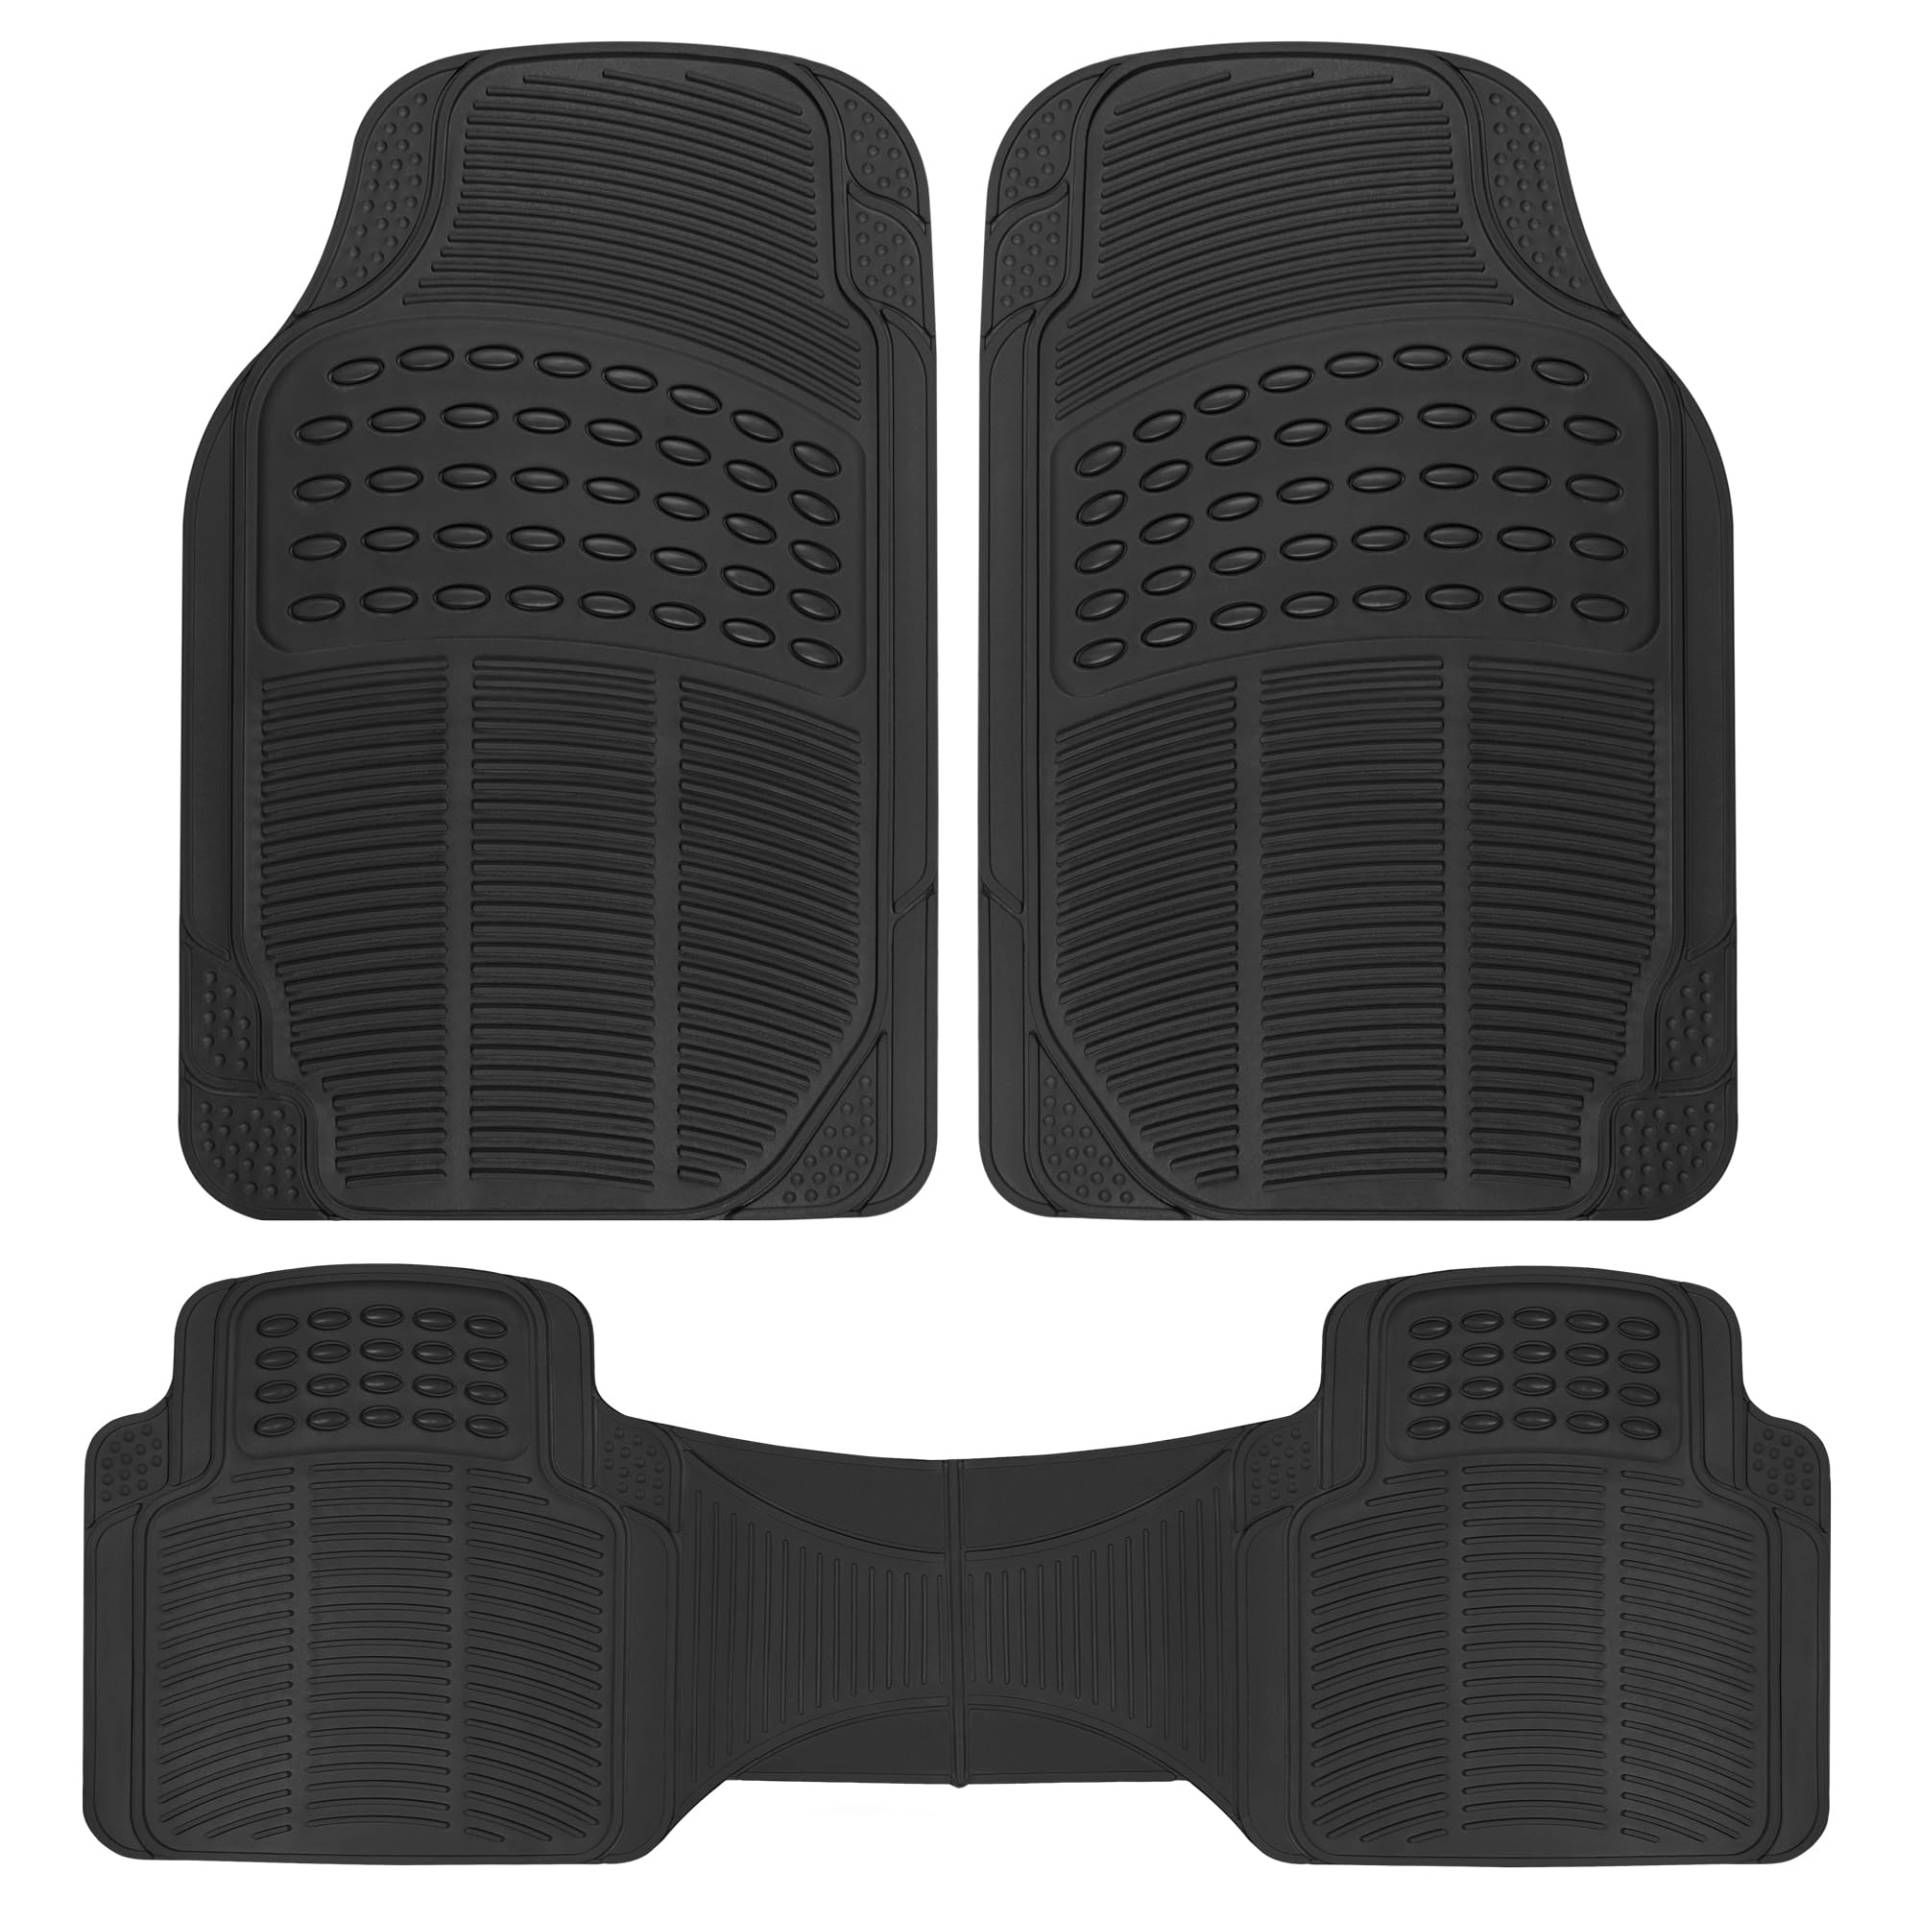 BDK Original ProLiner 3-teilig Strapazierfähige Fußmatten vorne & hinten Gummi für Auto SUV Van & LKW schwarz - Allwetter-Bodenschutz mit Universal Passform Design von BDK